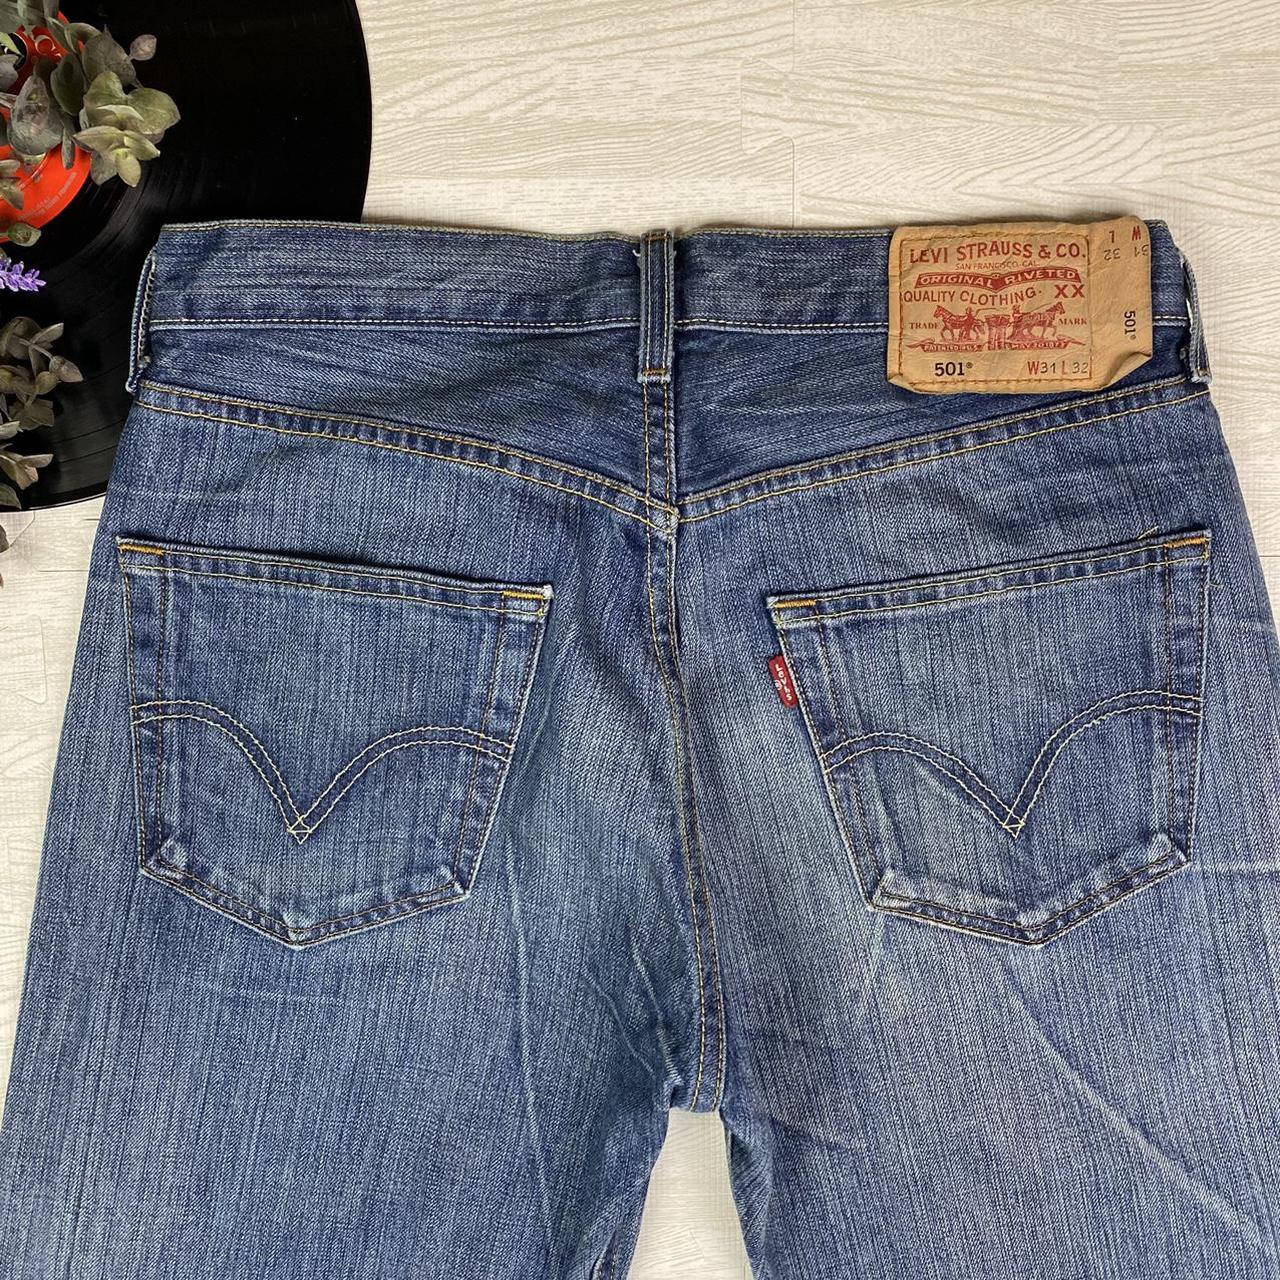 Levi's 501 Jeans Vintage levis pants. 500 series... - Depop